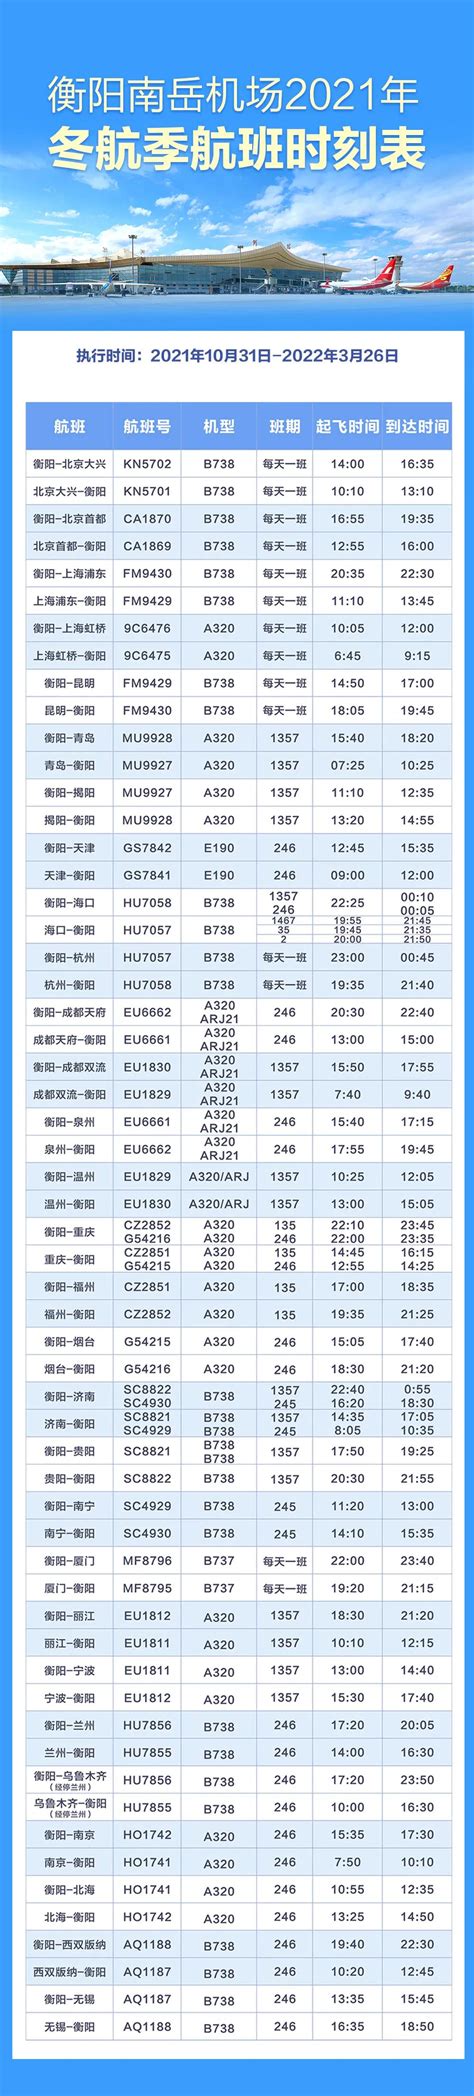 2021年-2022年冬春航季衡阳南岳机场航班时刻表-全网搜索